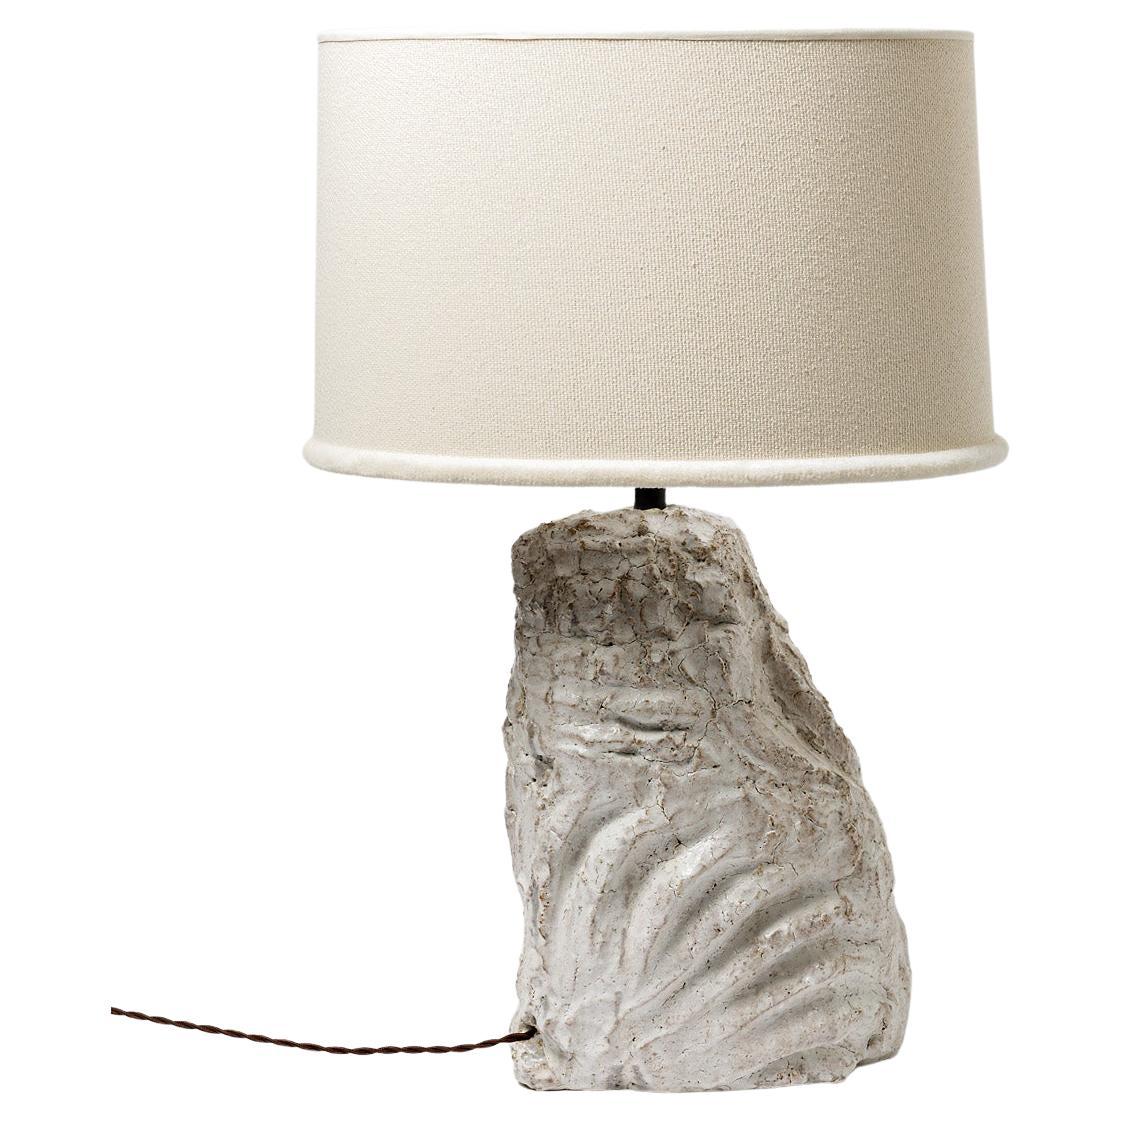 Keramische Tischlampe mit weißer Glasur von Hervé Rousseau, 2022 / Ref 8